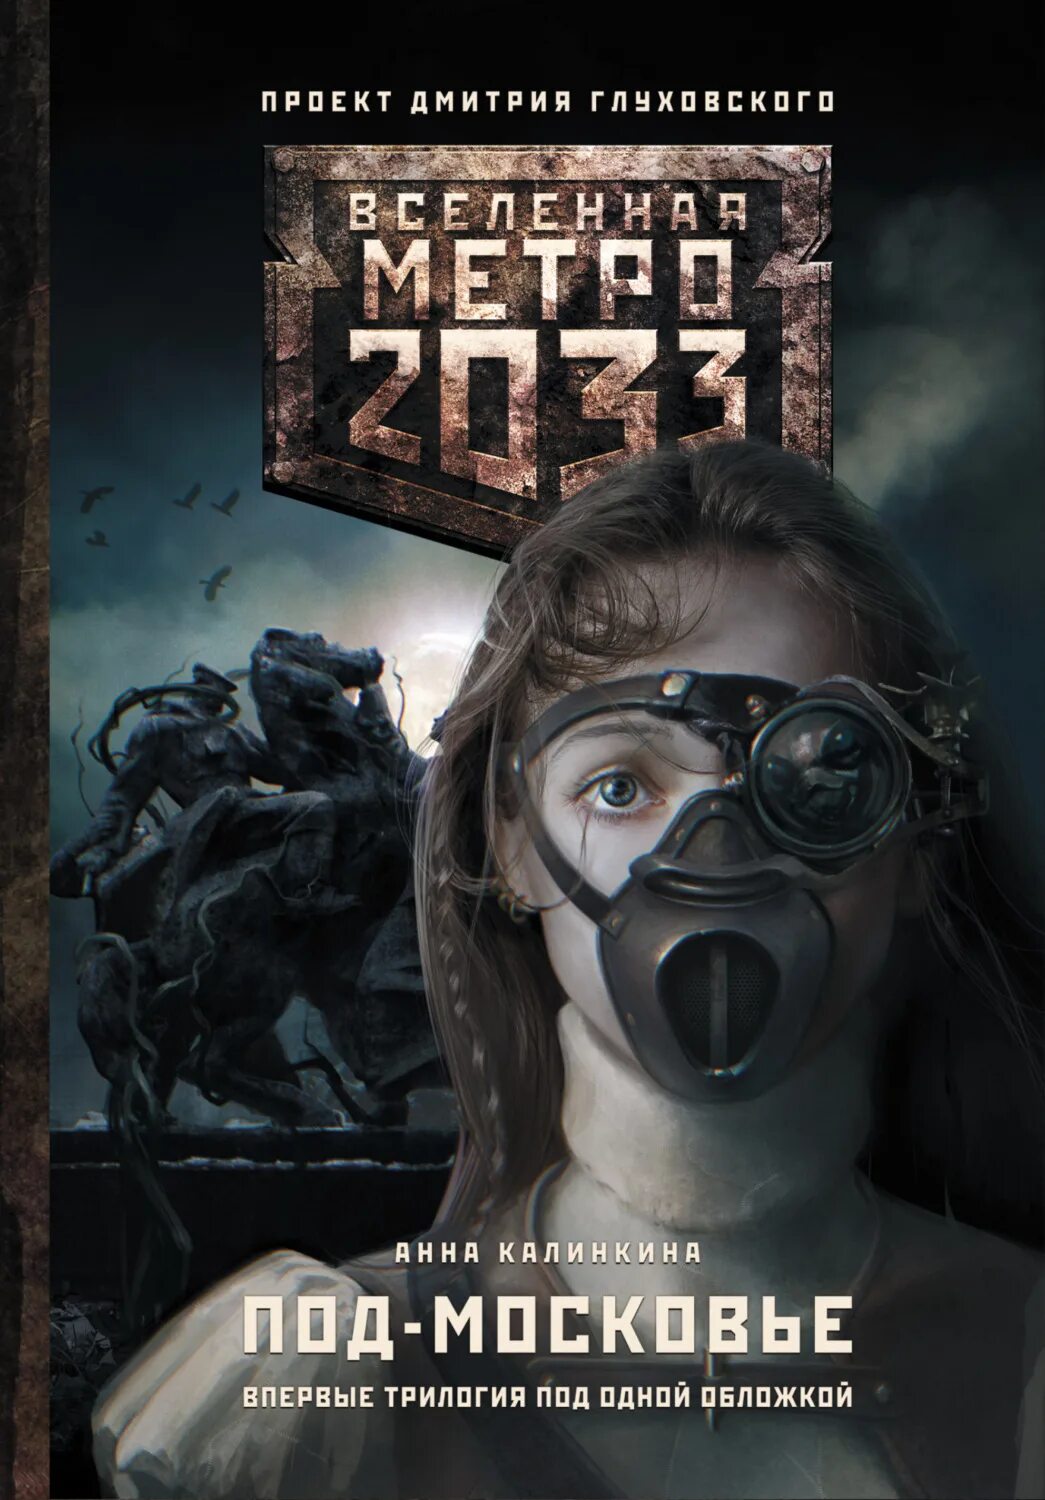 Metro 2033 Глуховский. Метро 2033 книга. Метро глуховский купить